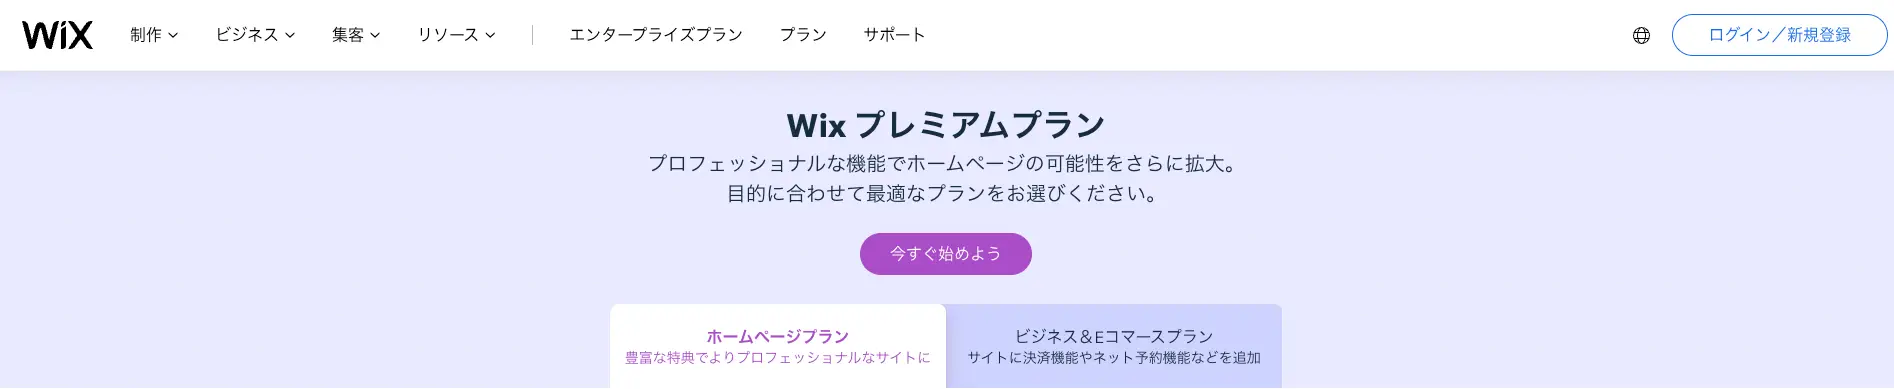 Wix 料金プラン